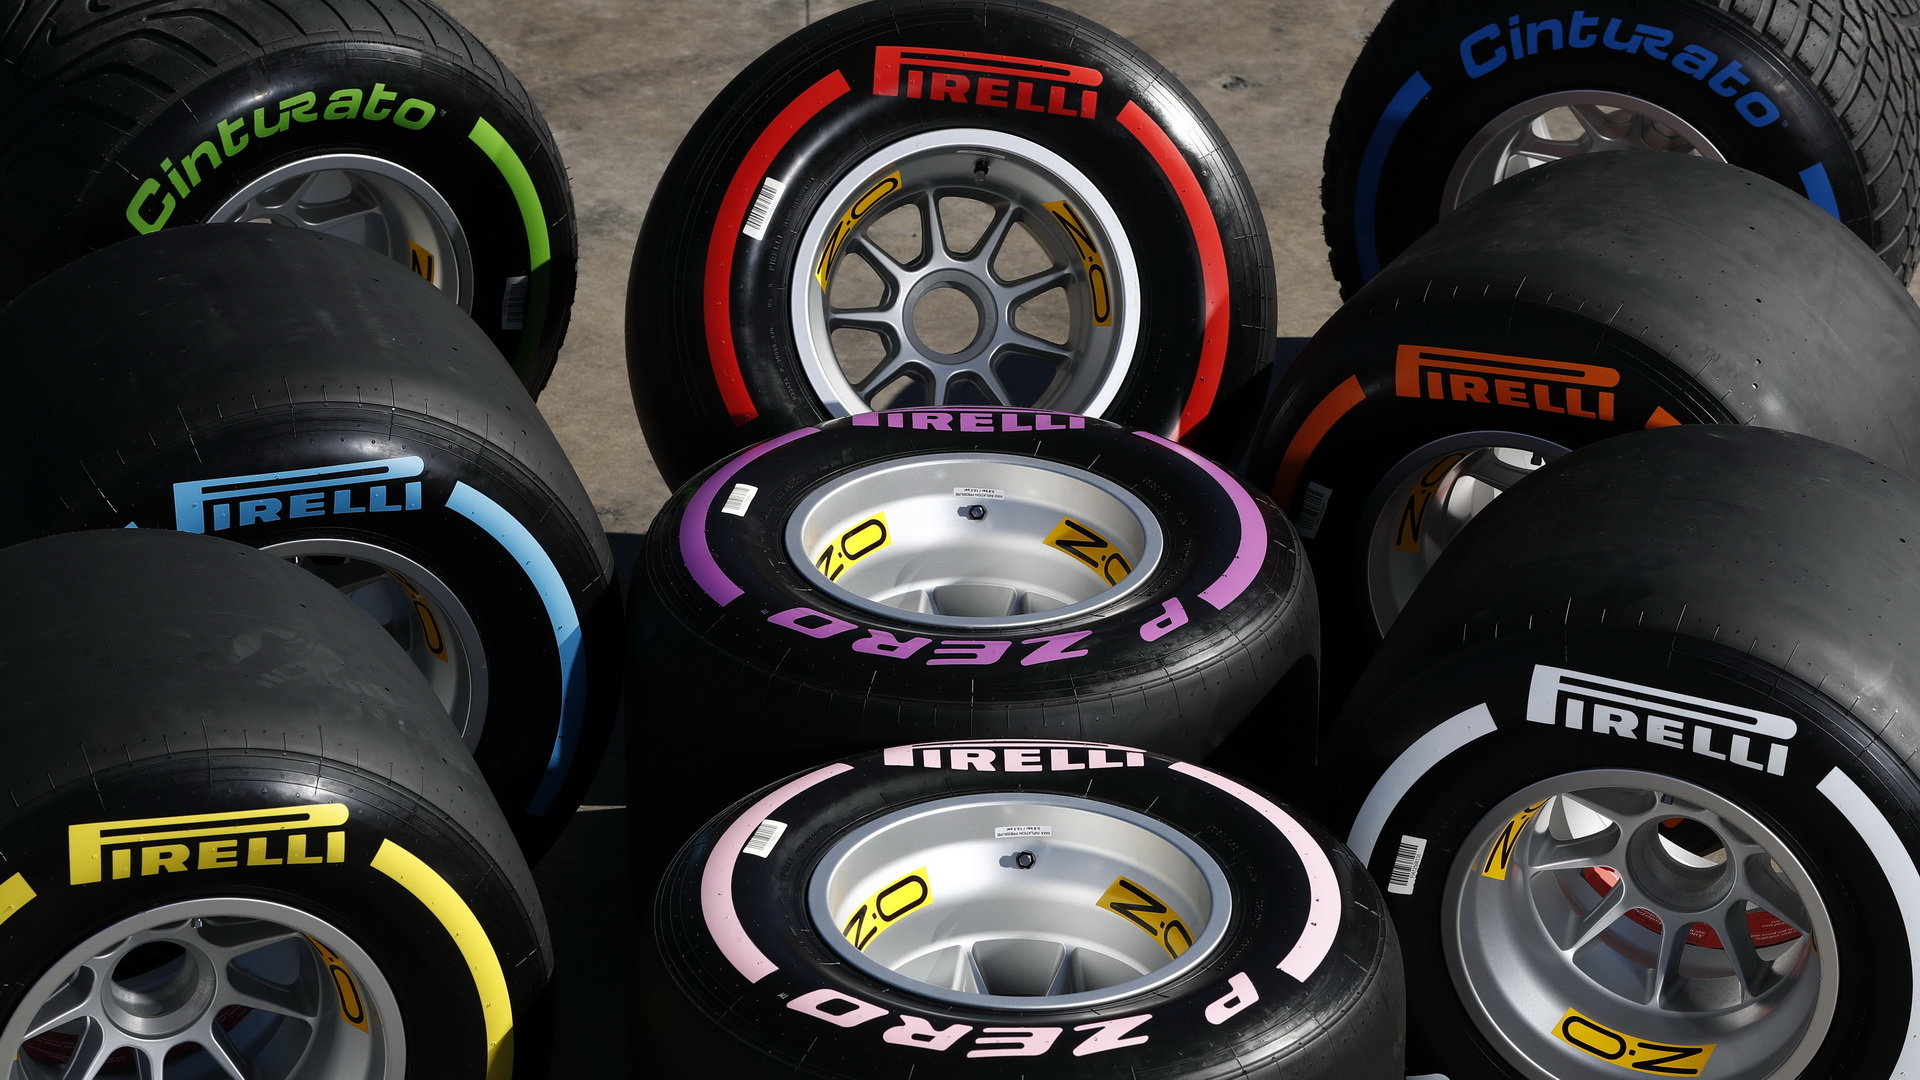 Pirelli dodatečně upraví specifikace svých pneumatik pro závody ve Španělsku, ve Francii a ve Velké Británii